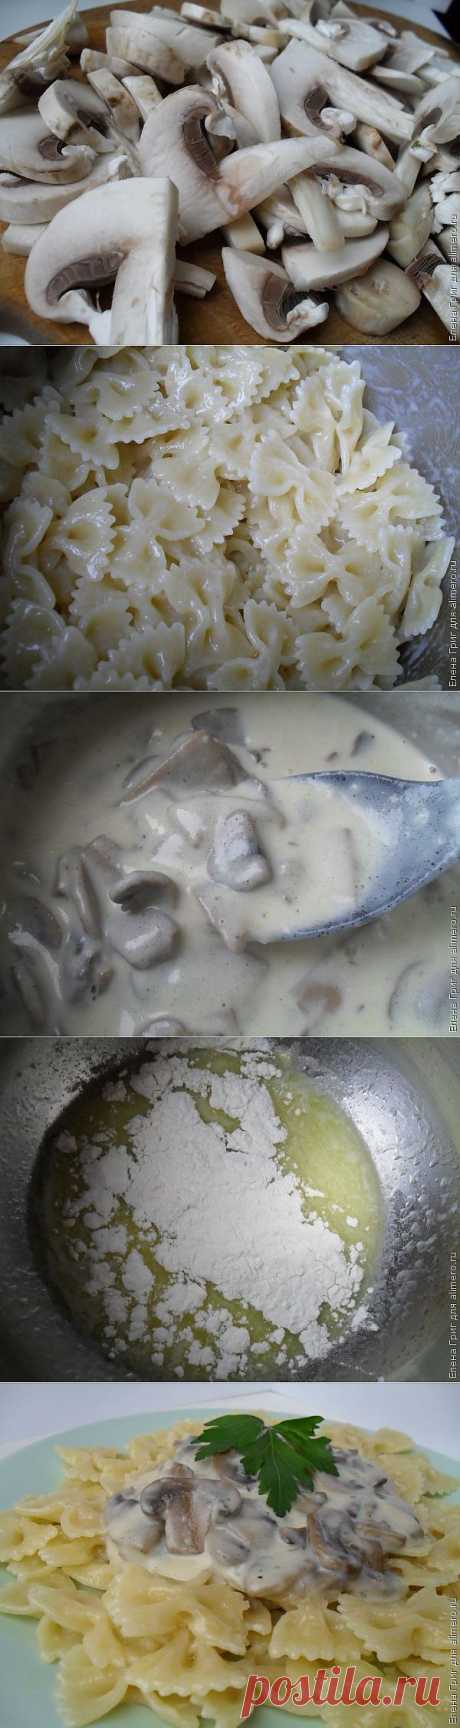 Паста в сливочном соусе с грибами / Рецепты с фото